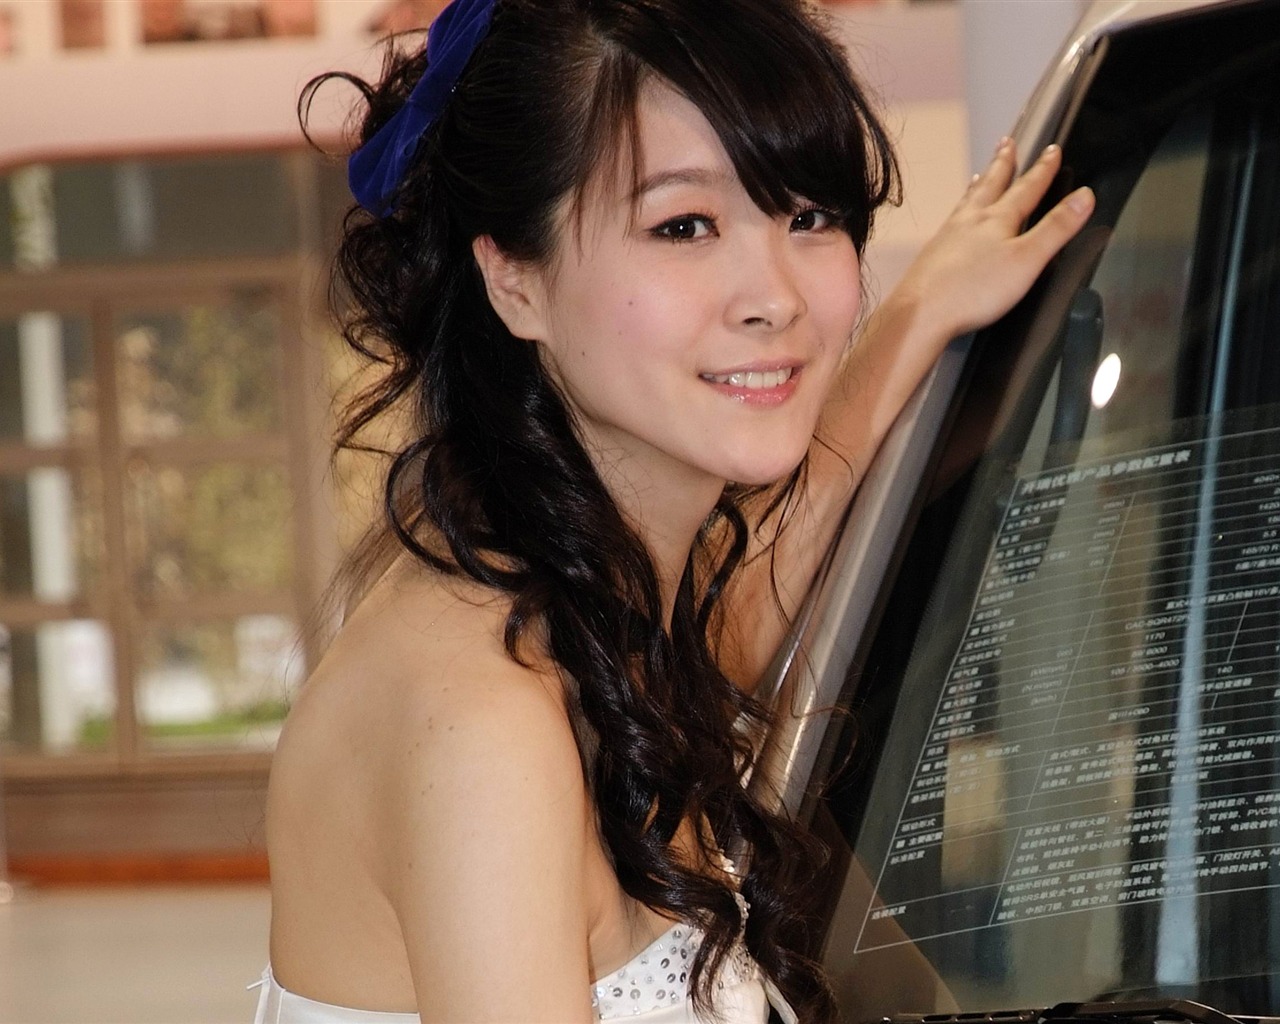 2010北京国际车展 美女车模 (螺纹钢作品)23 - 1280x1024